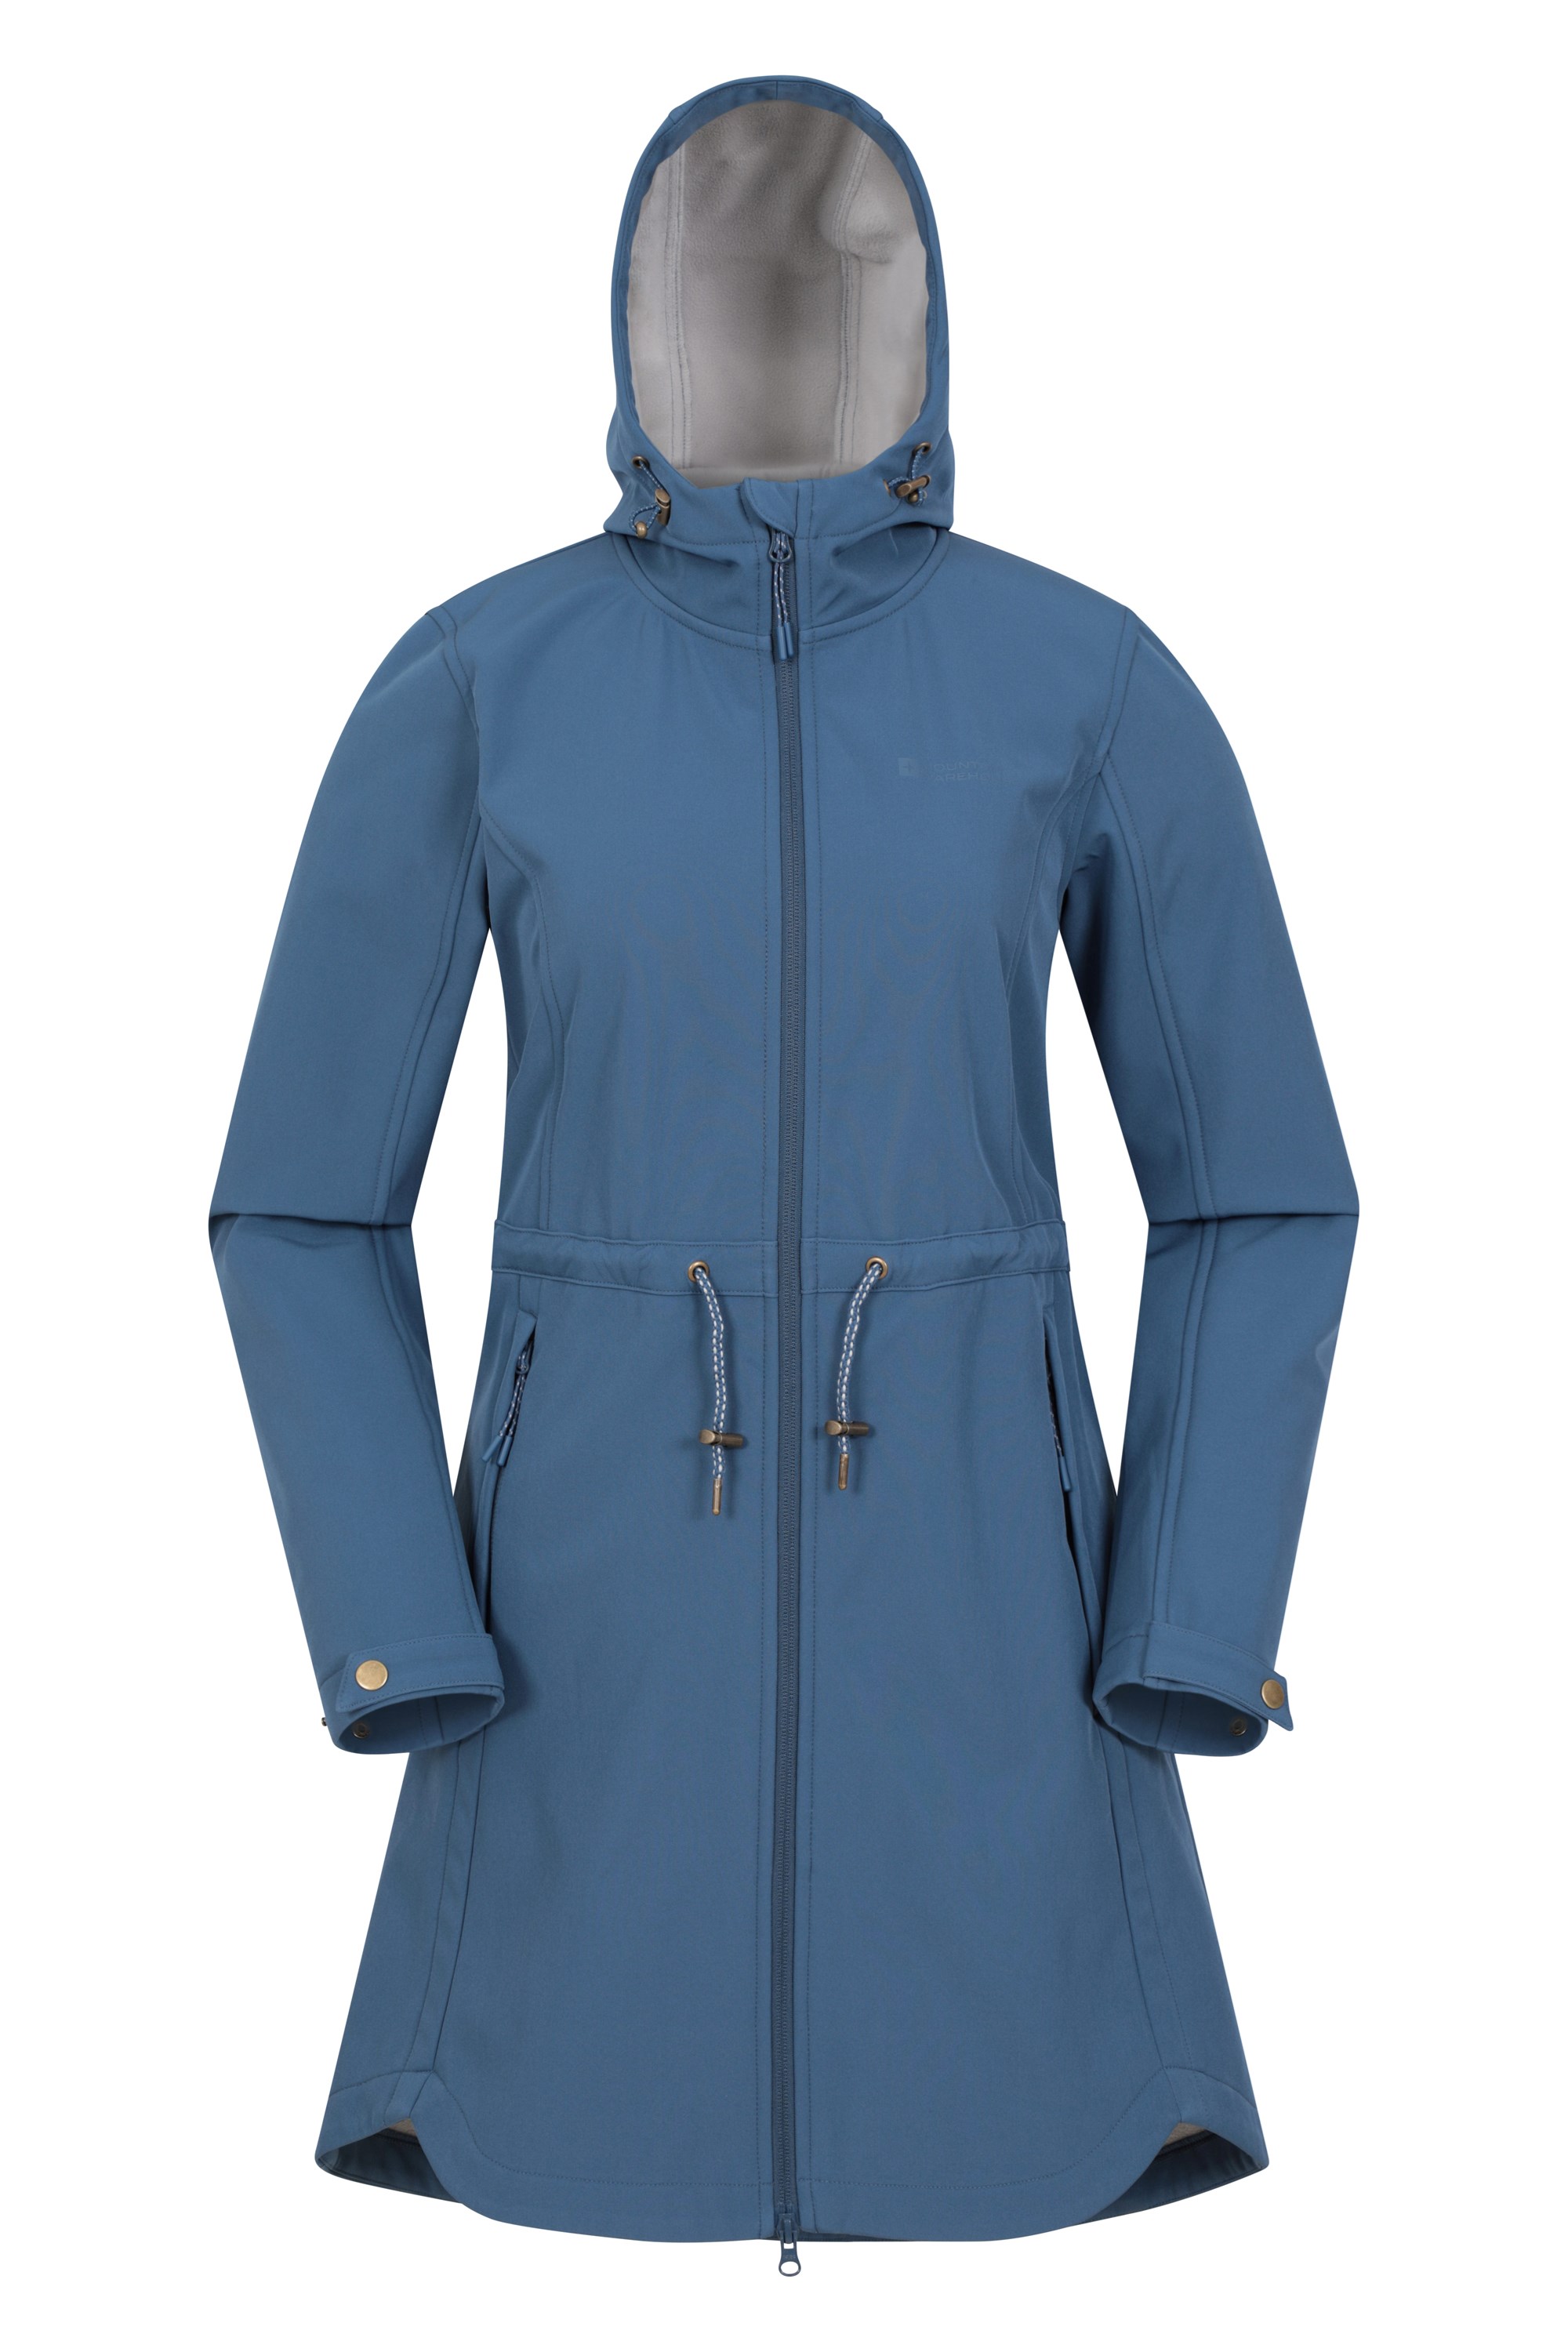 Bastet Womens Longline Softshell Jacket - Blue